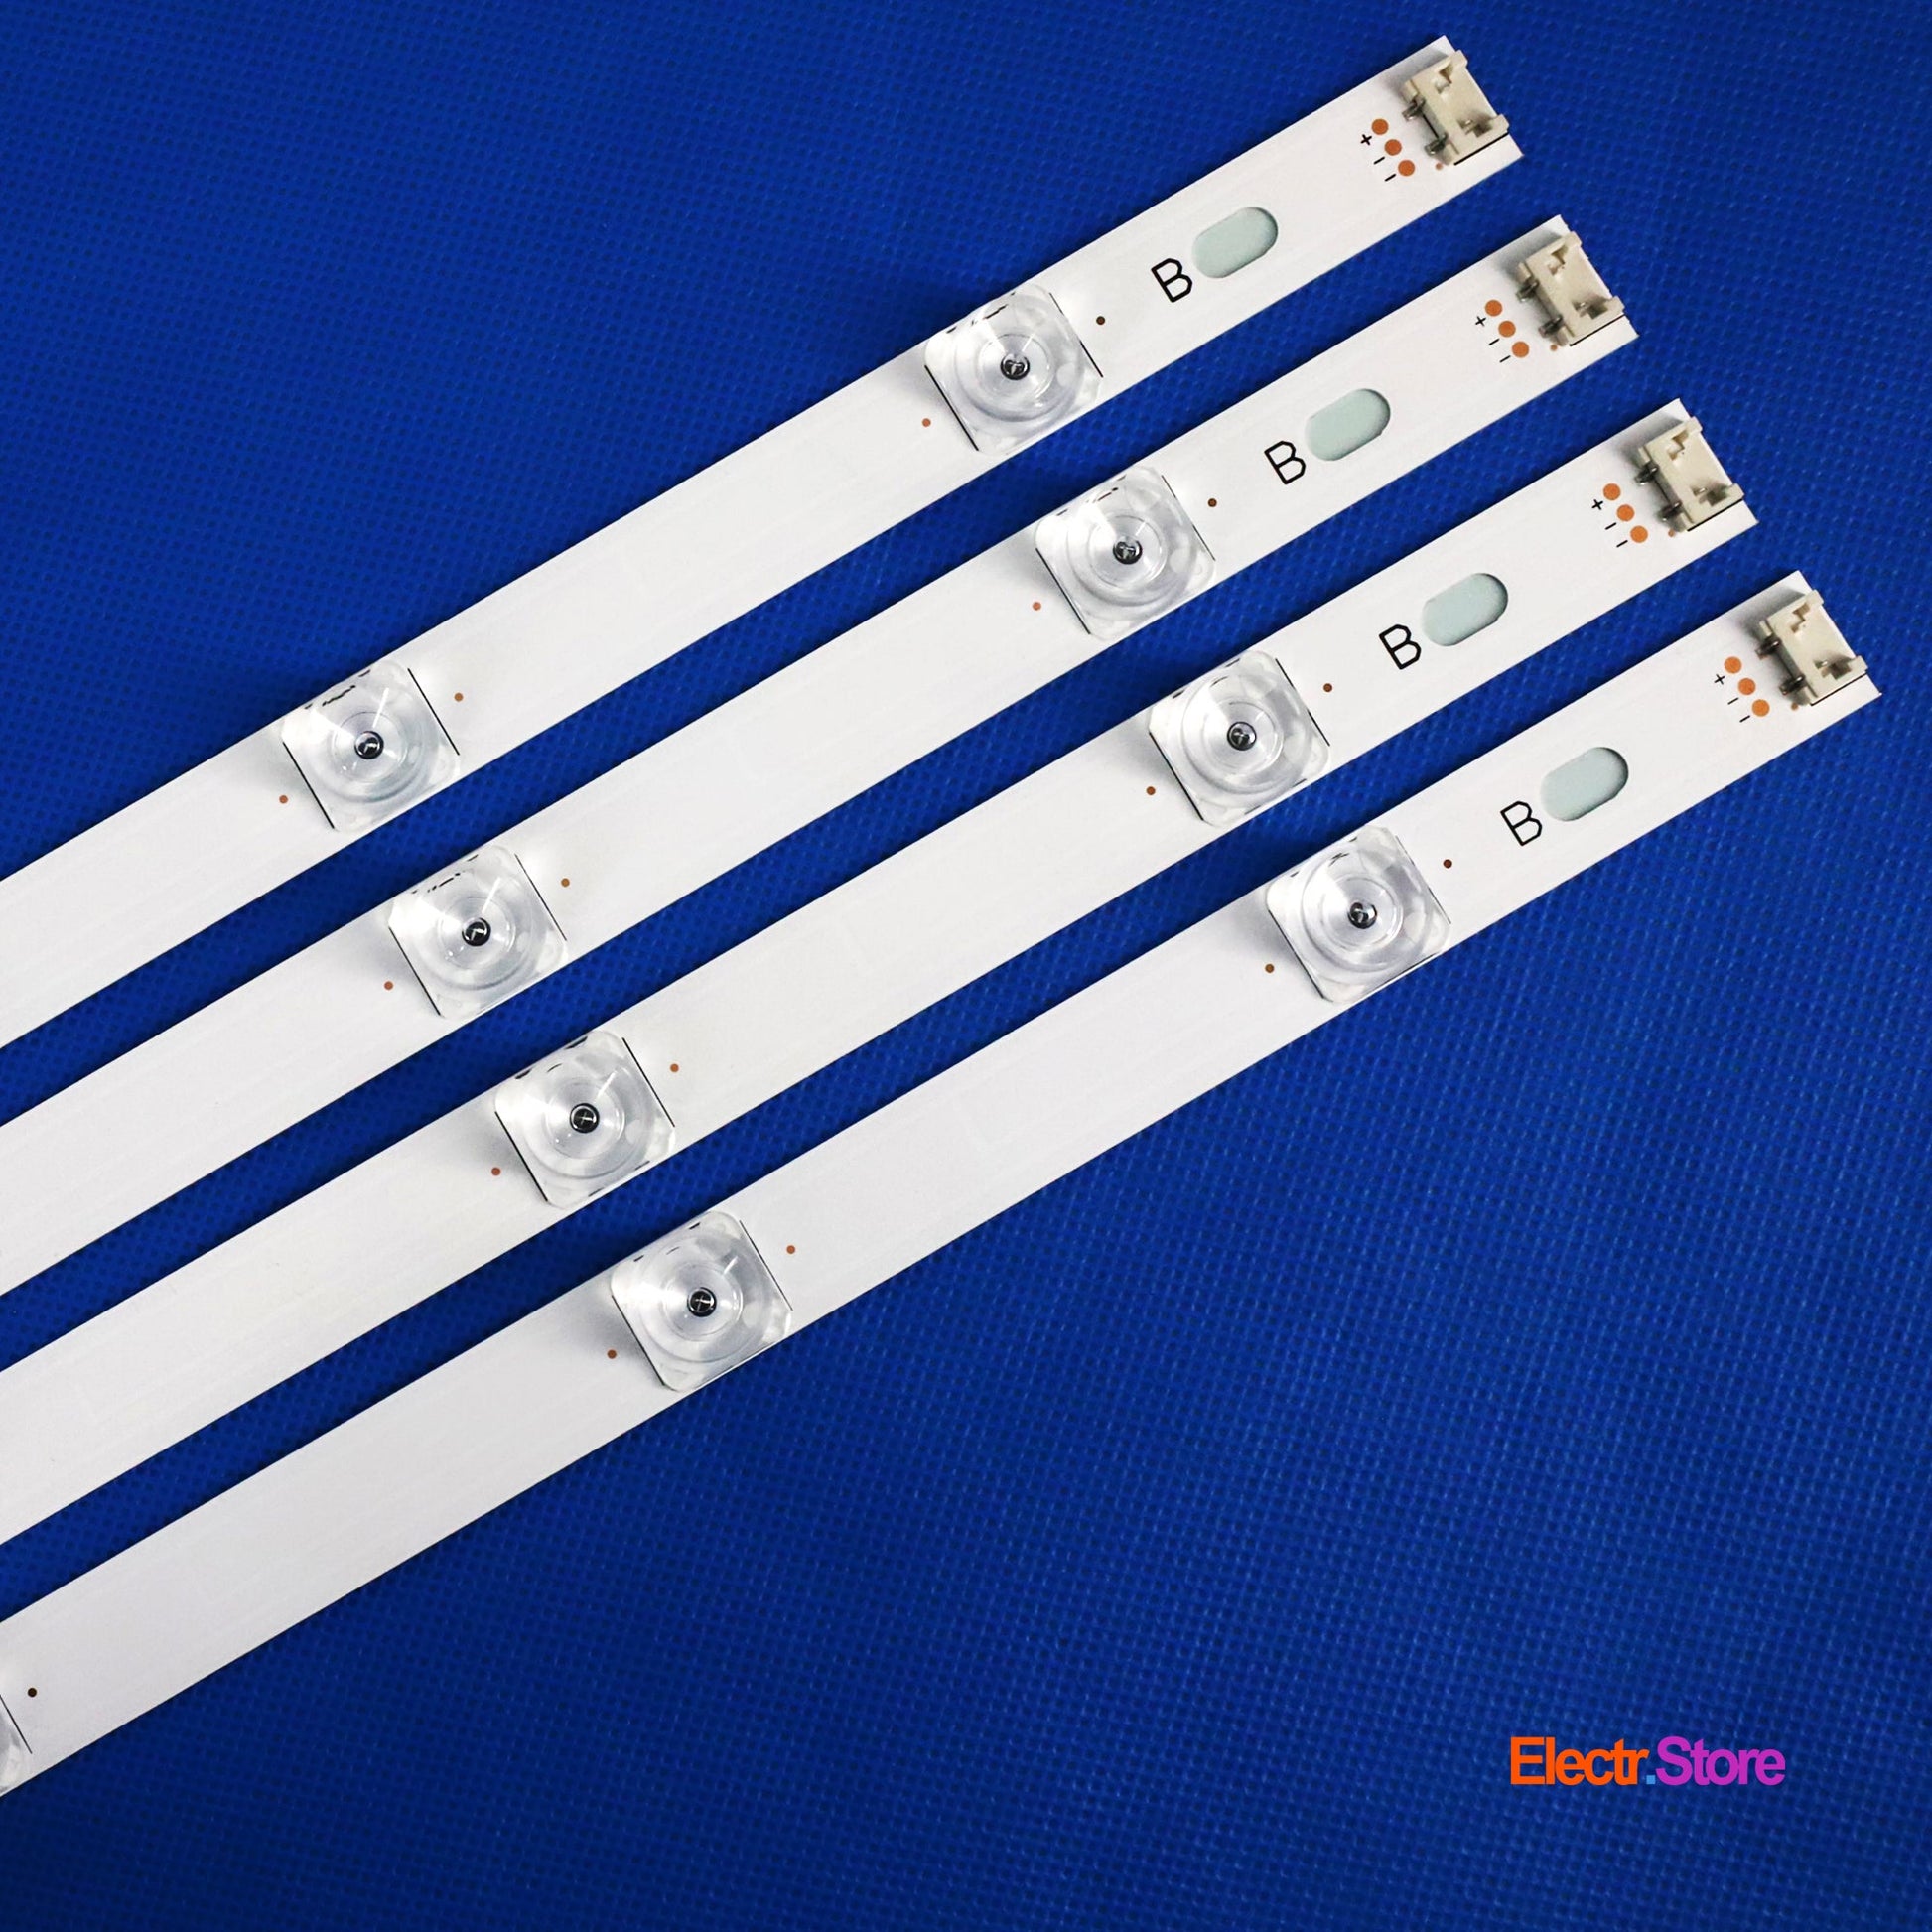 LED Backlight Strip Kits, Innotek DRT 3.0 42"_A/B-Type (Square Pedestal), AGF78402101, 6916L-1956A/6916L-1957A (8 pcs/kit), for TV 42" PANEL: LC420DUEFGA1, LC420DUEFGA2, LC420DUEFGA3, LC420DUEFGA4 42" DRT 3.0 42" LED Backlights LG Electr.Store